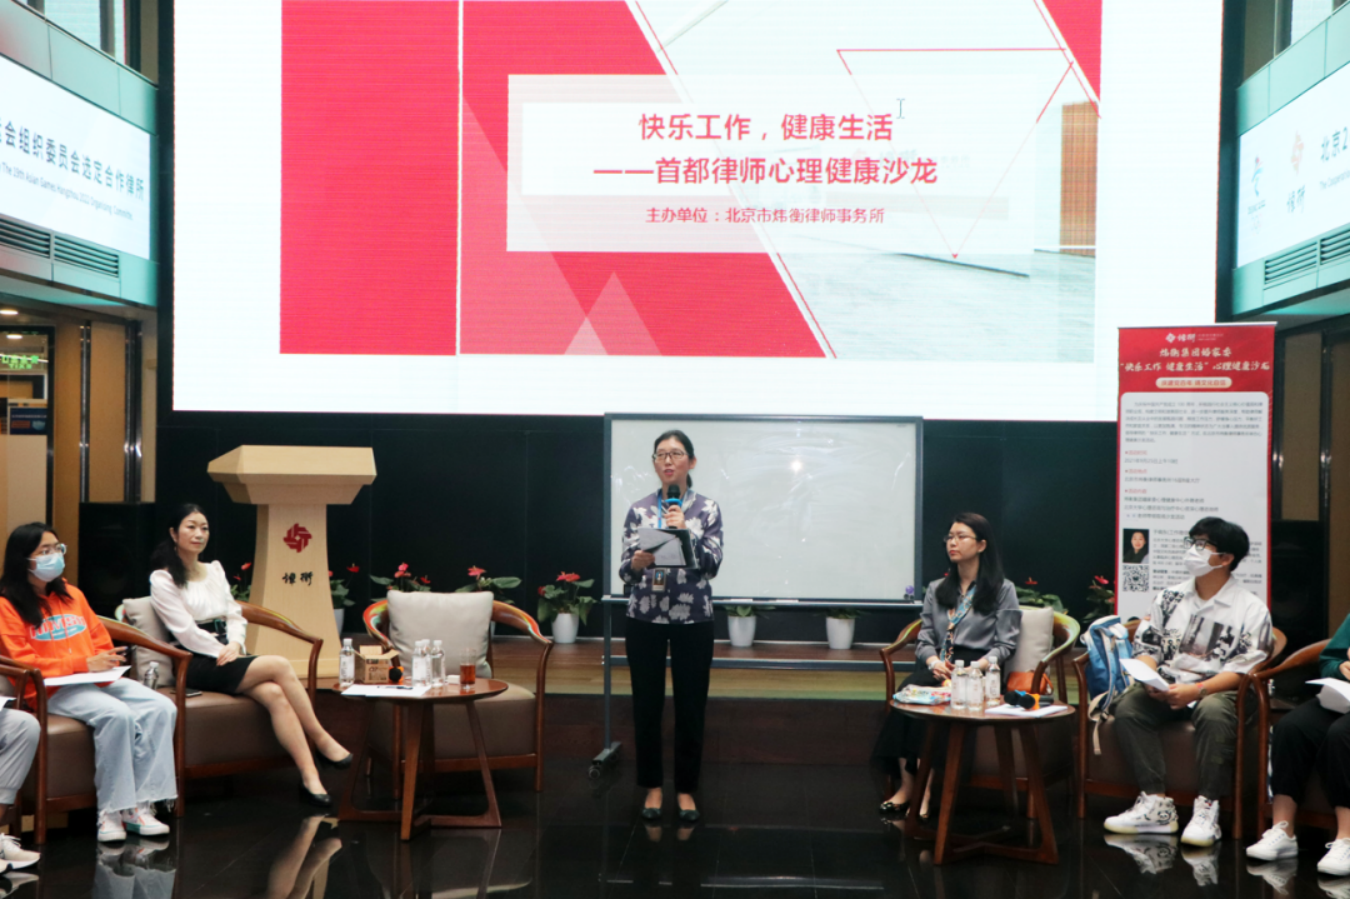 北京市炜衡律师事务所成功举办“快乐工作，健康生活”首都律师心理健康沙龙活动